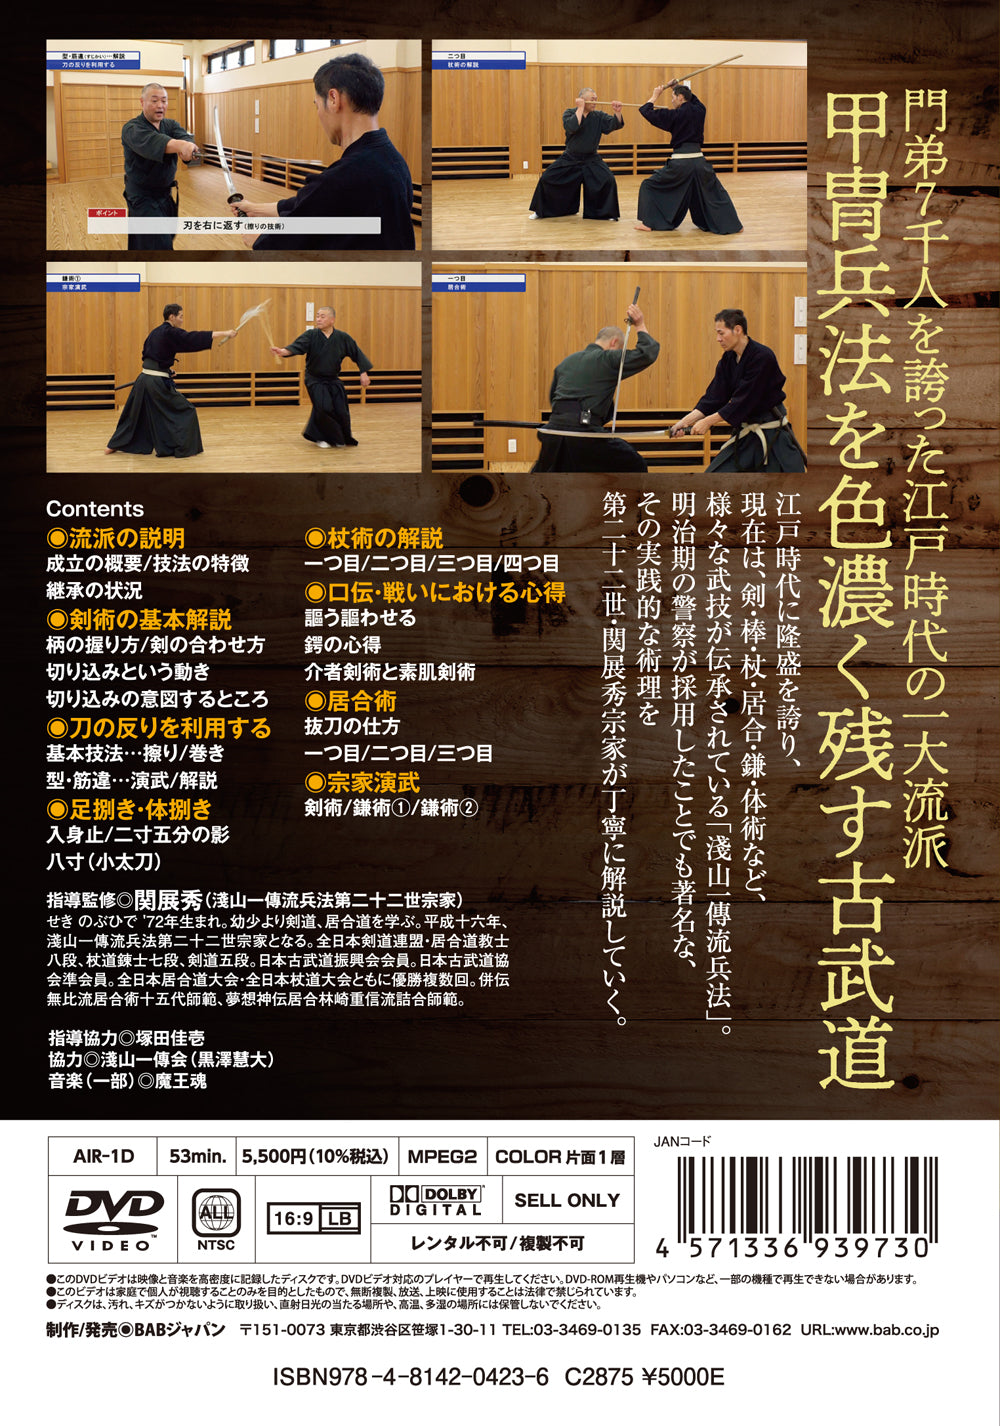 Asayama Ichiden Ryu Hyoho DVD by Nobuhide Seki - Budovideos Inc